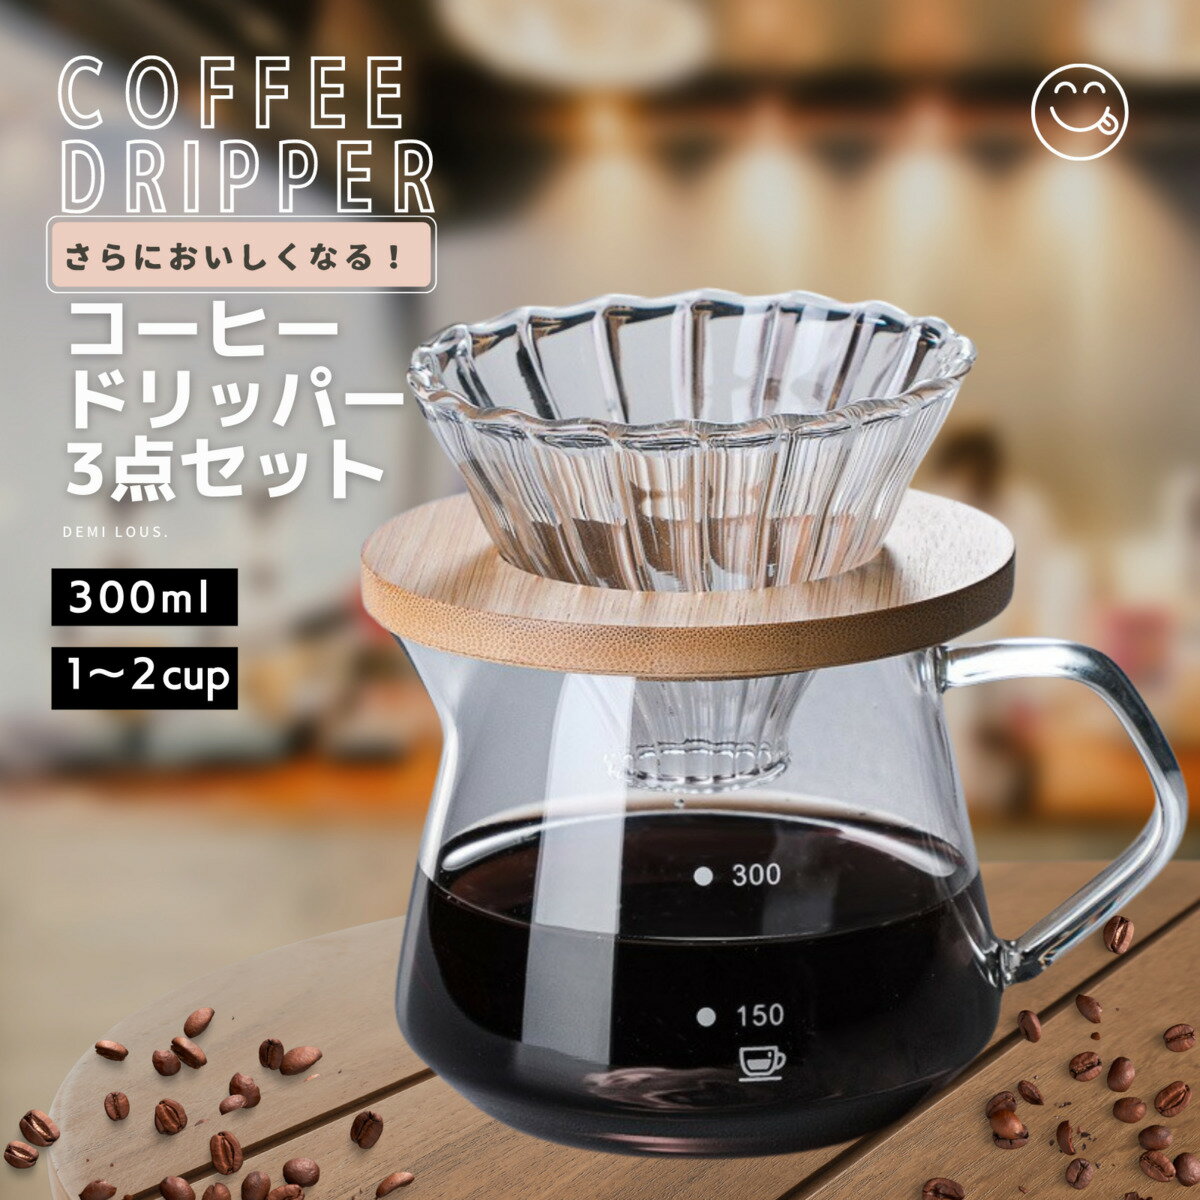 コーヒーサーバー コーヒードリッパー セット コーヒー ドリップ 器具 職人デザイン 耐熱ガラス コーヒー ドリッパー 3点セット (300ml 2カップ分)